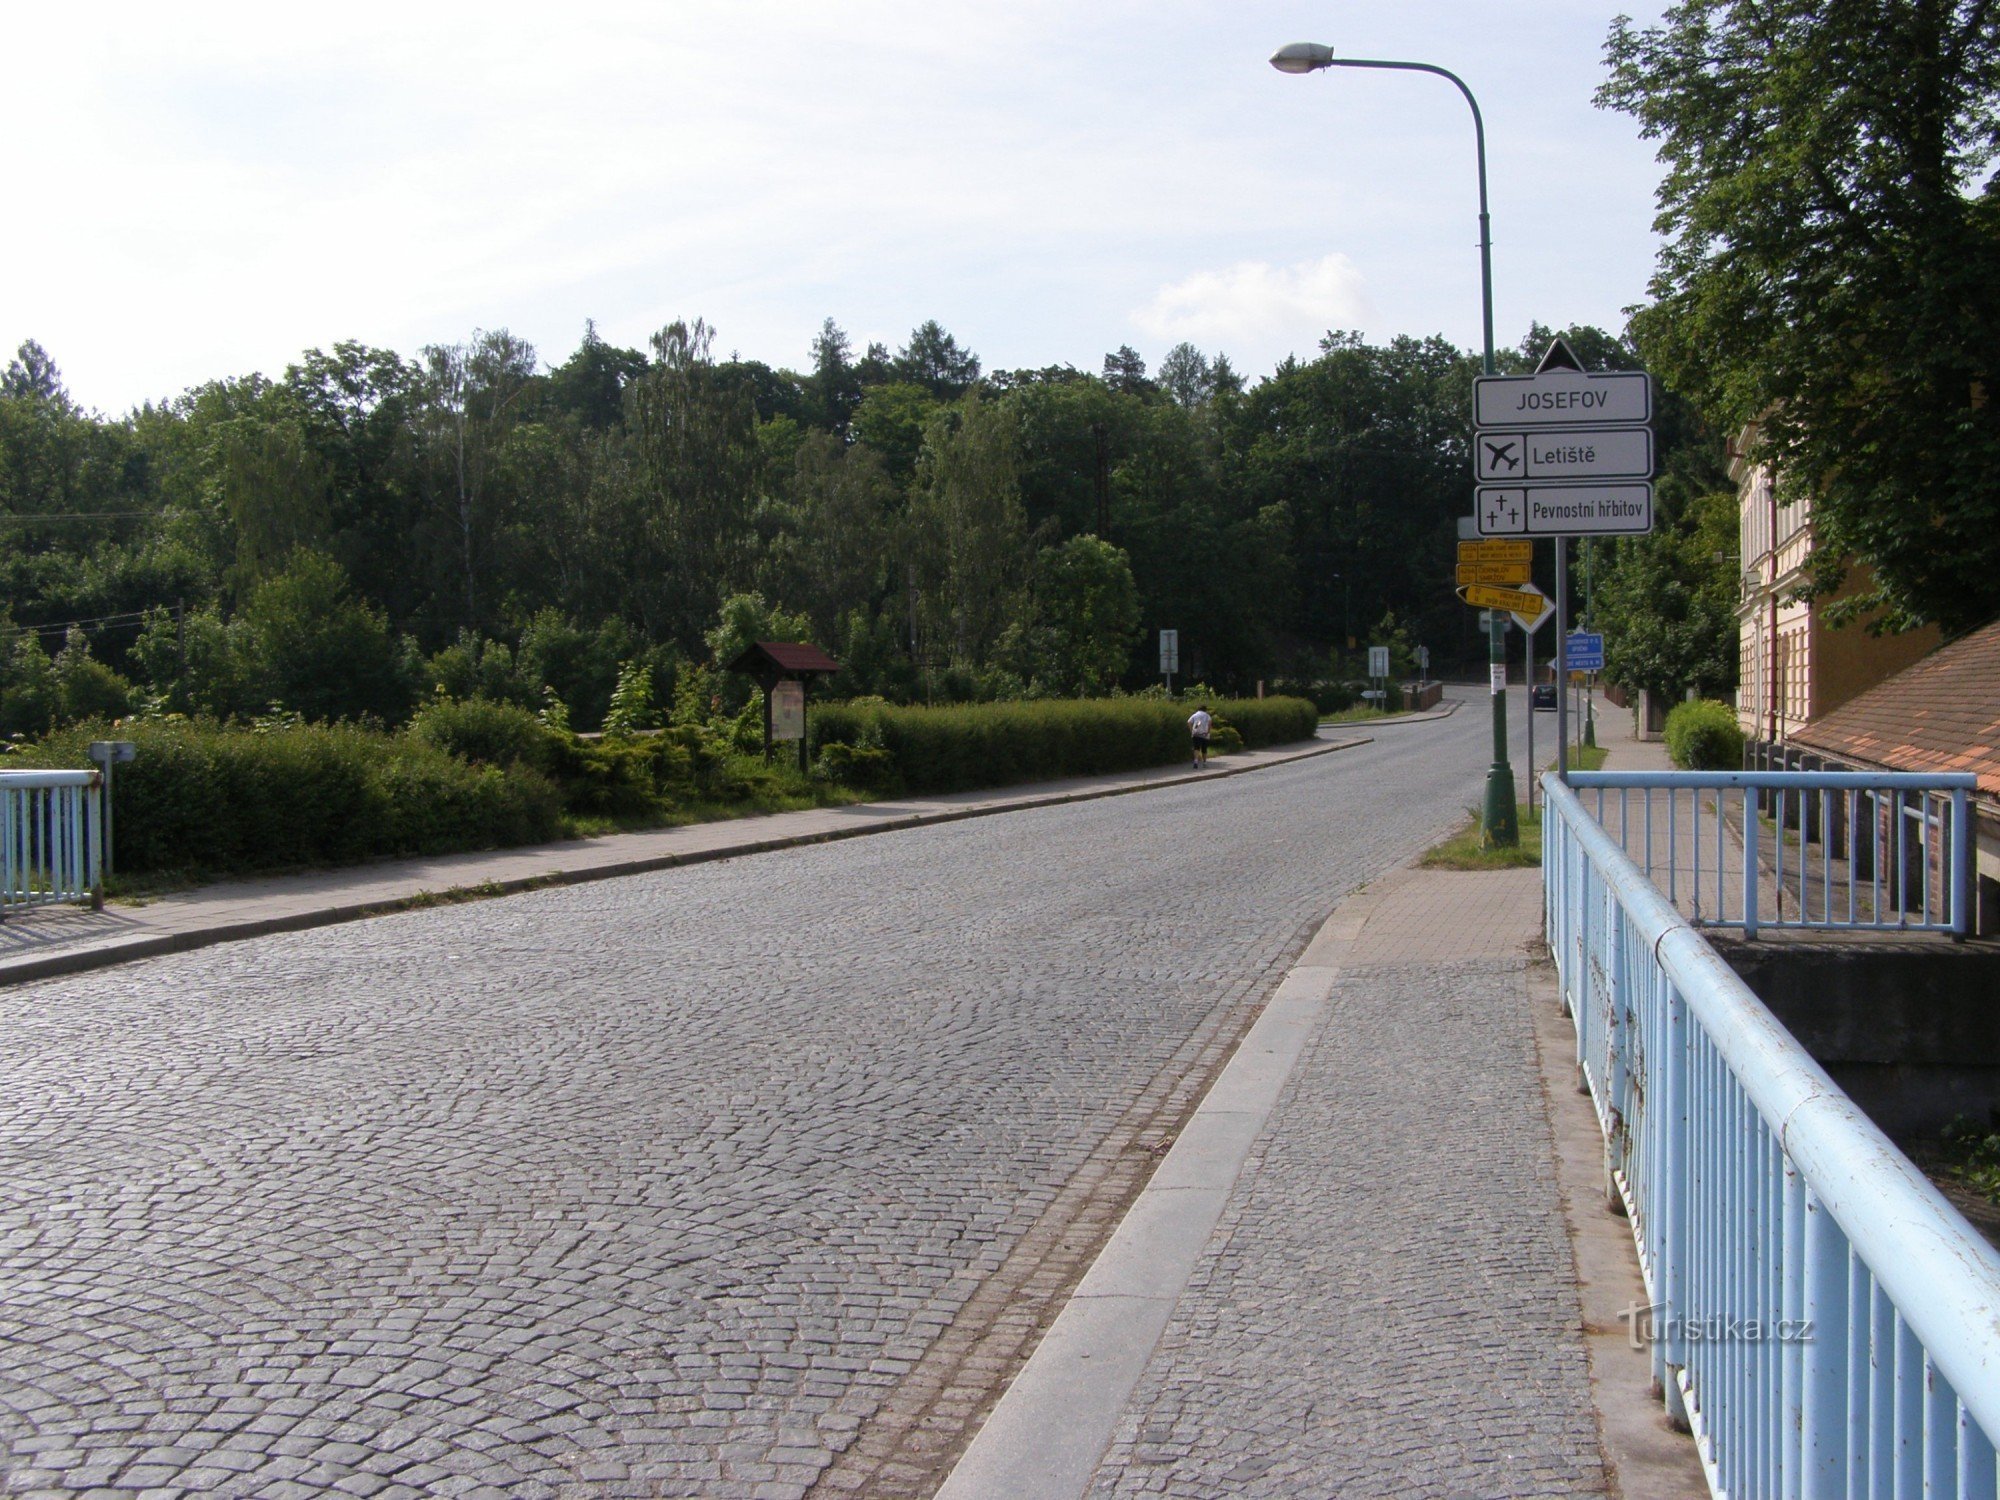 encruzilhada de cicloturismo - Josefov, perto da ponte